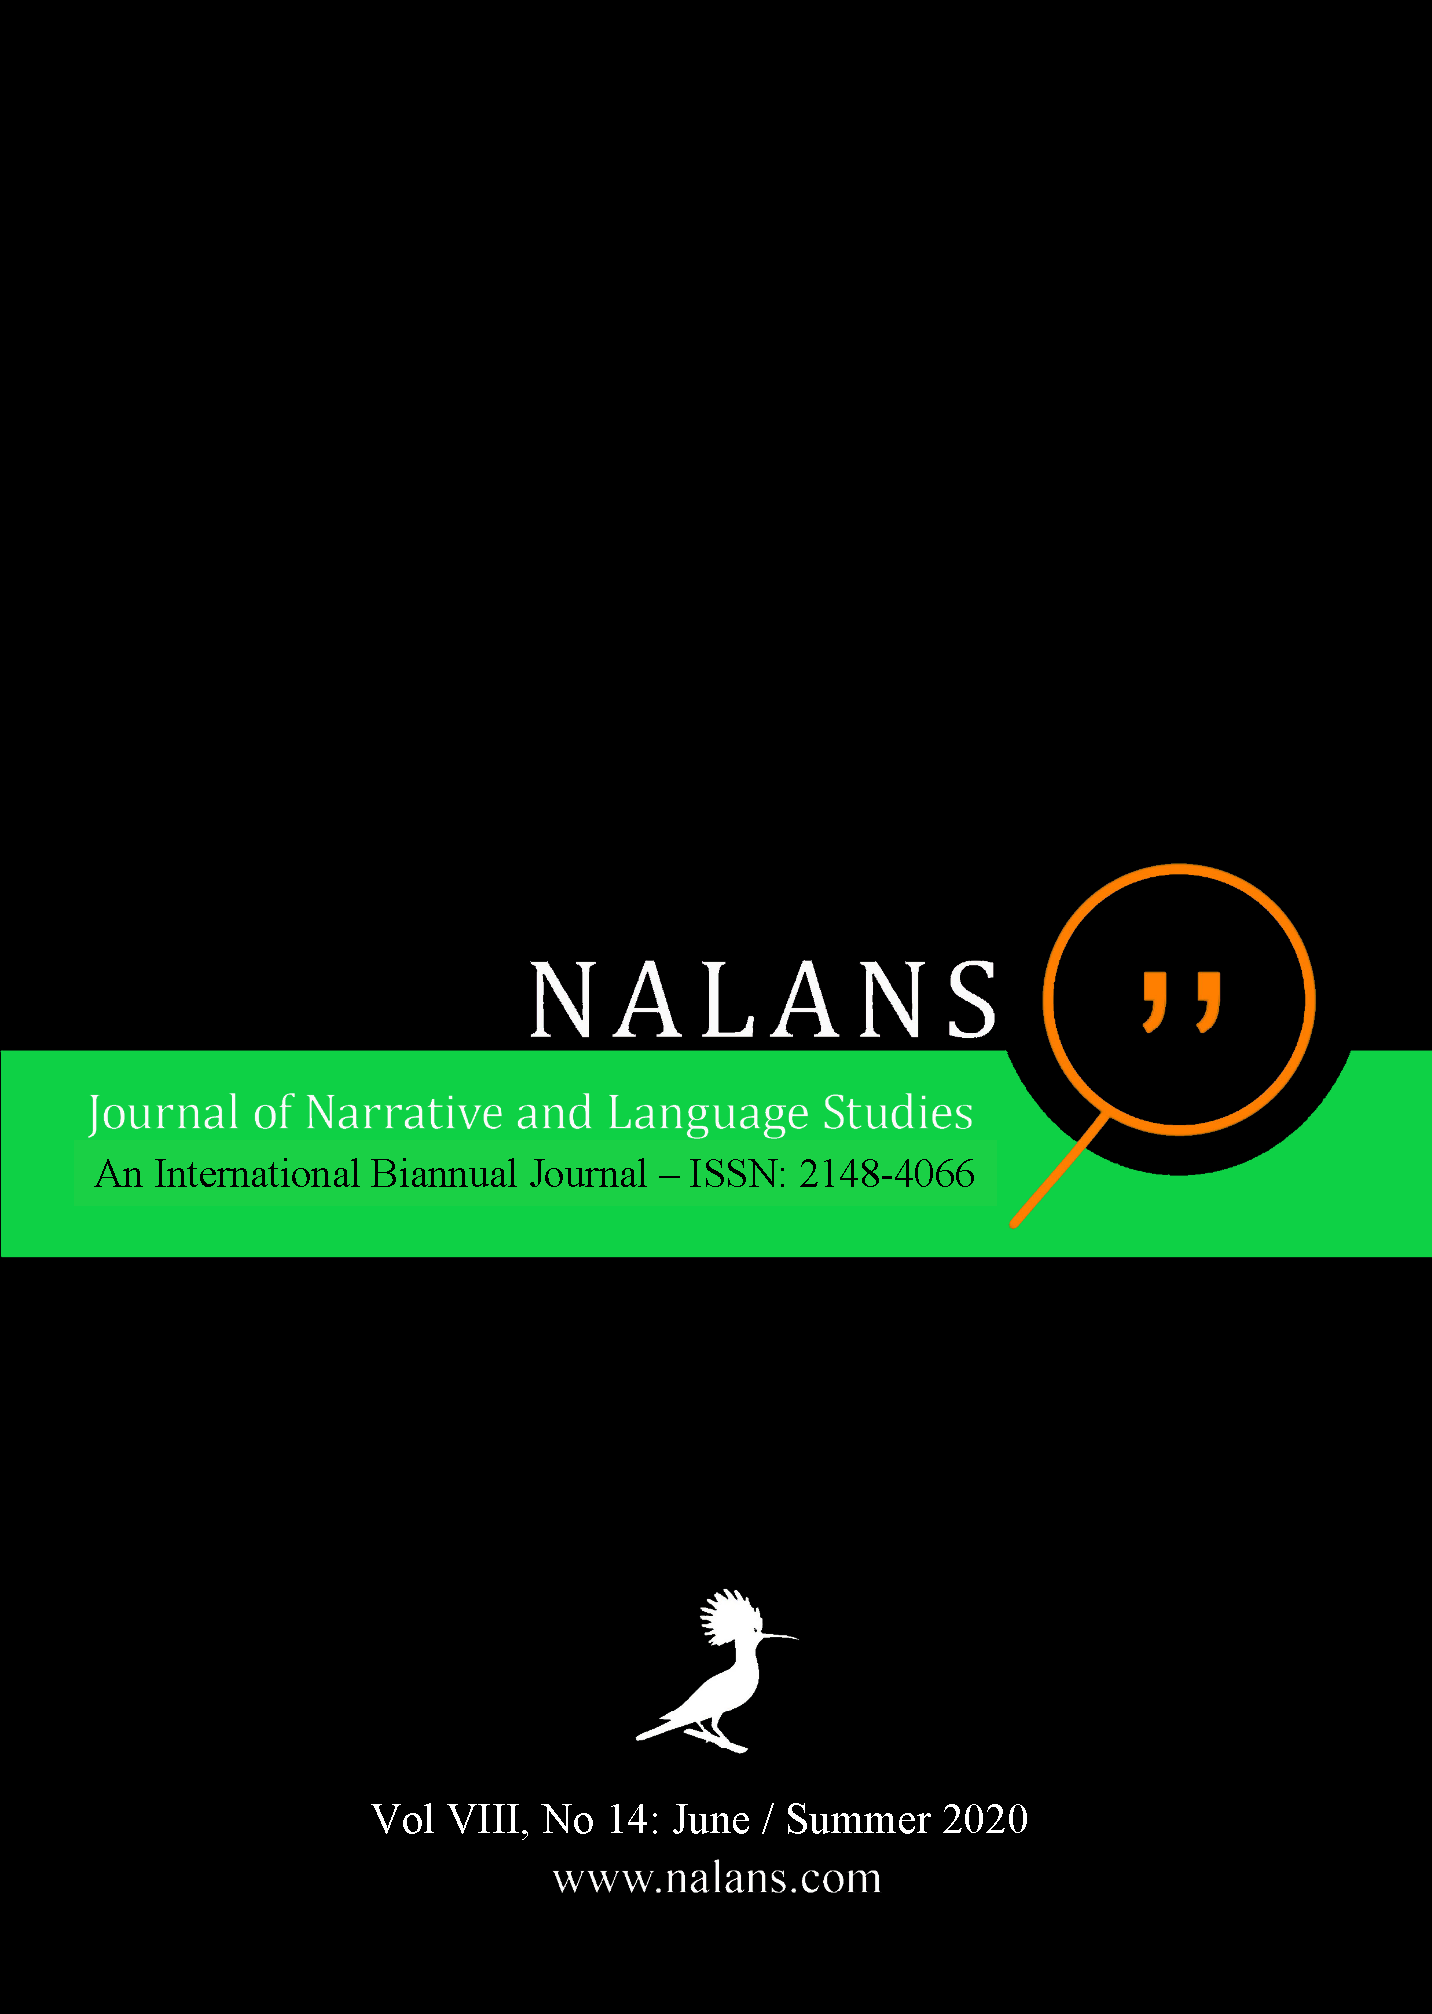 Journal of Narrative and Language Studies (NALANS)